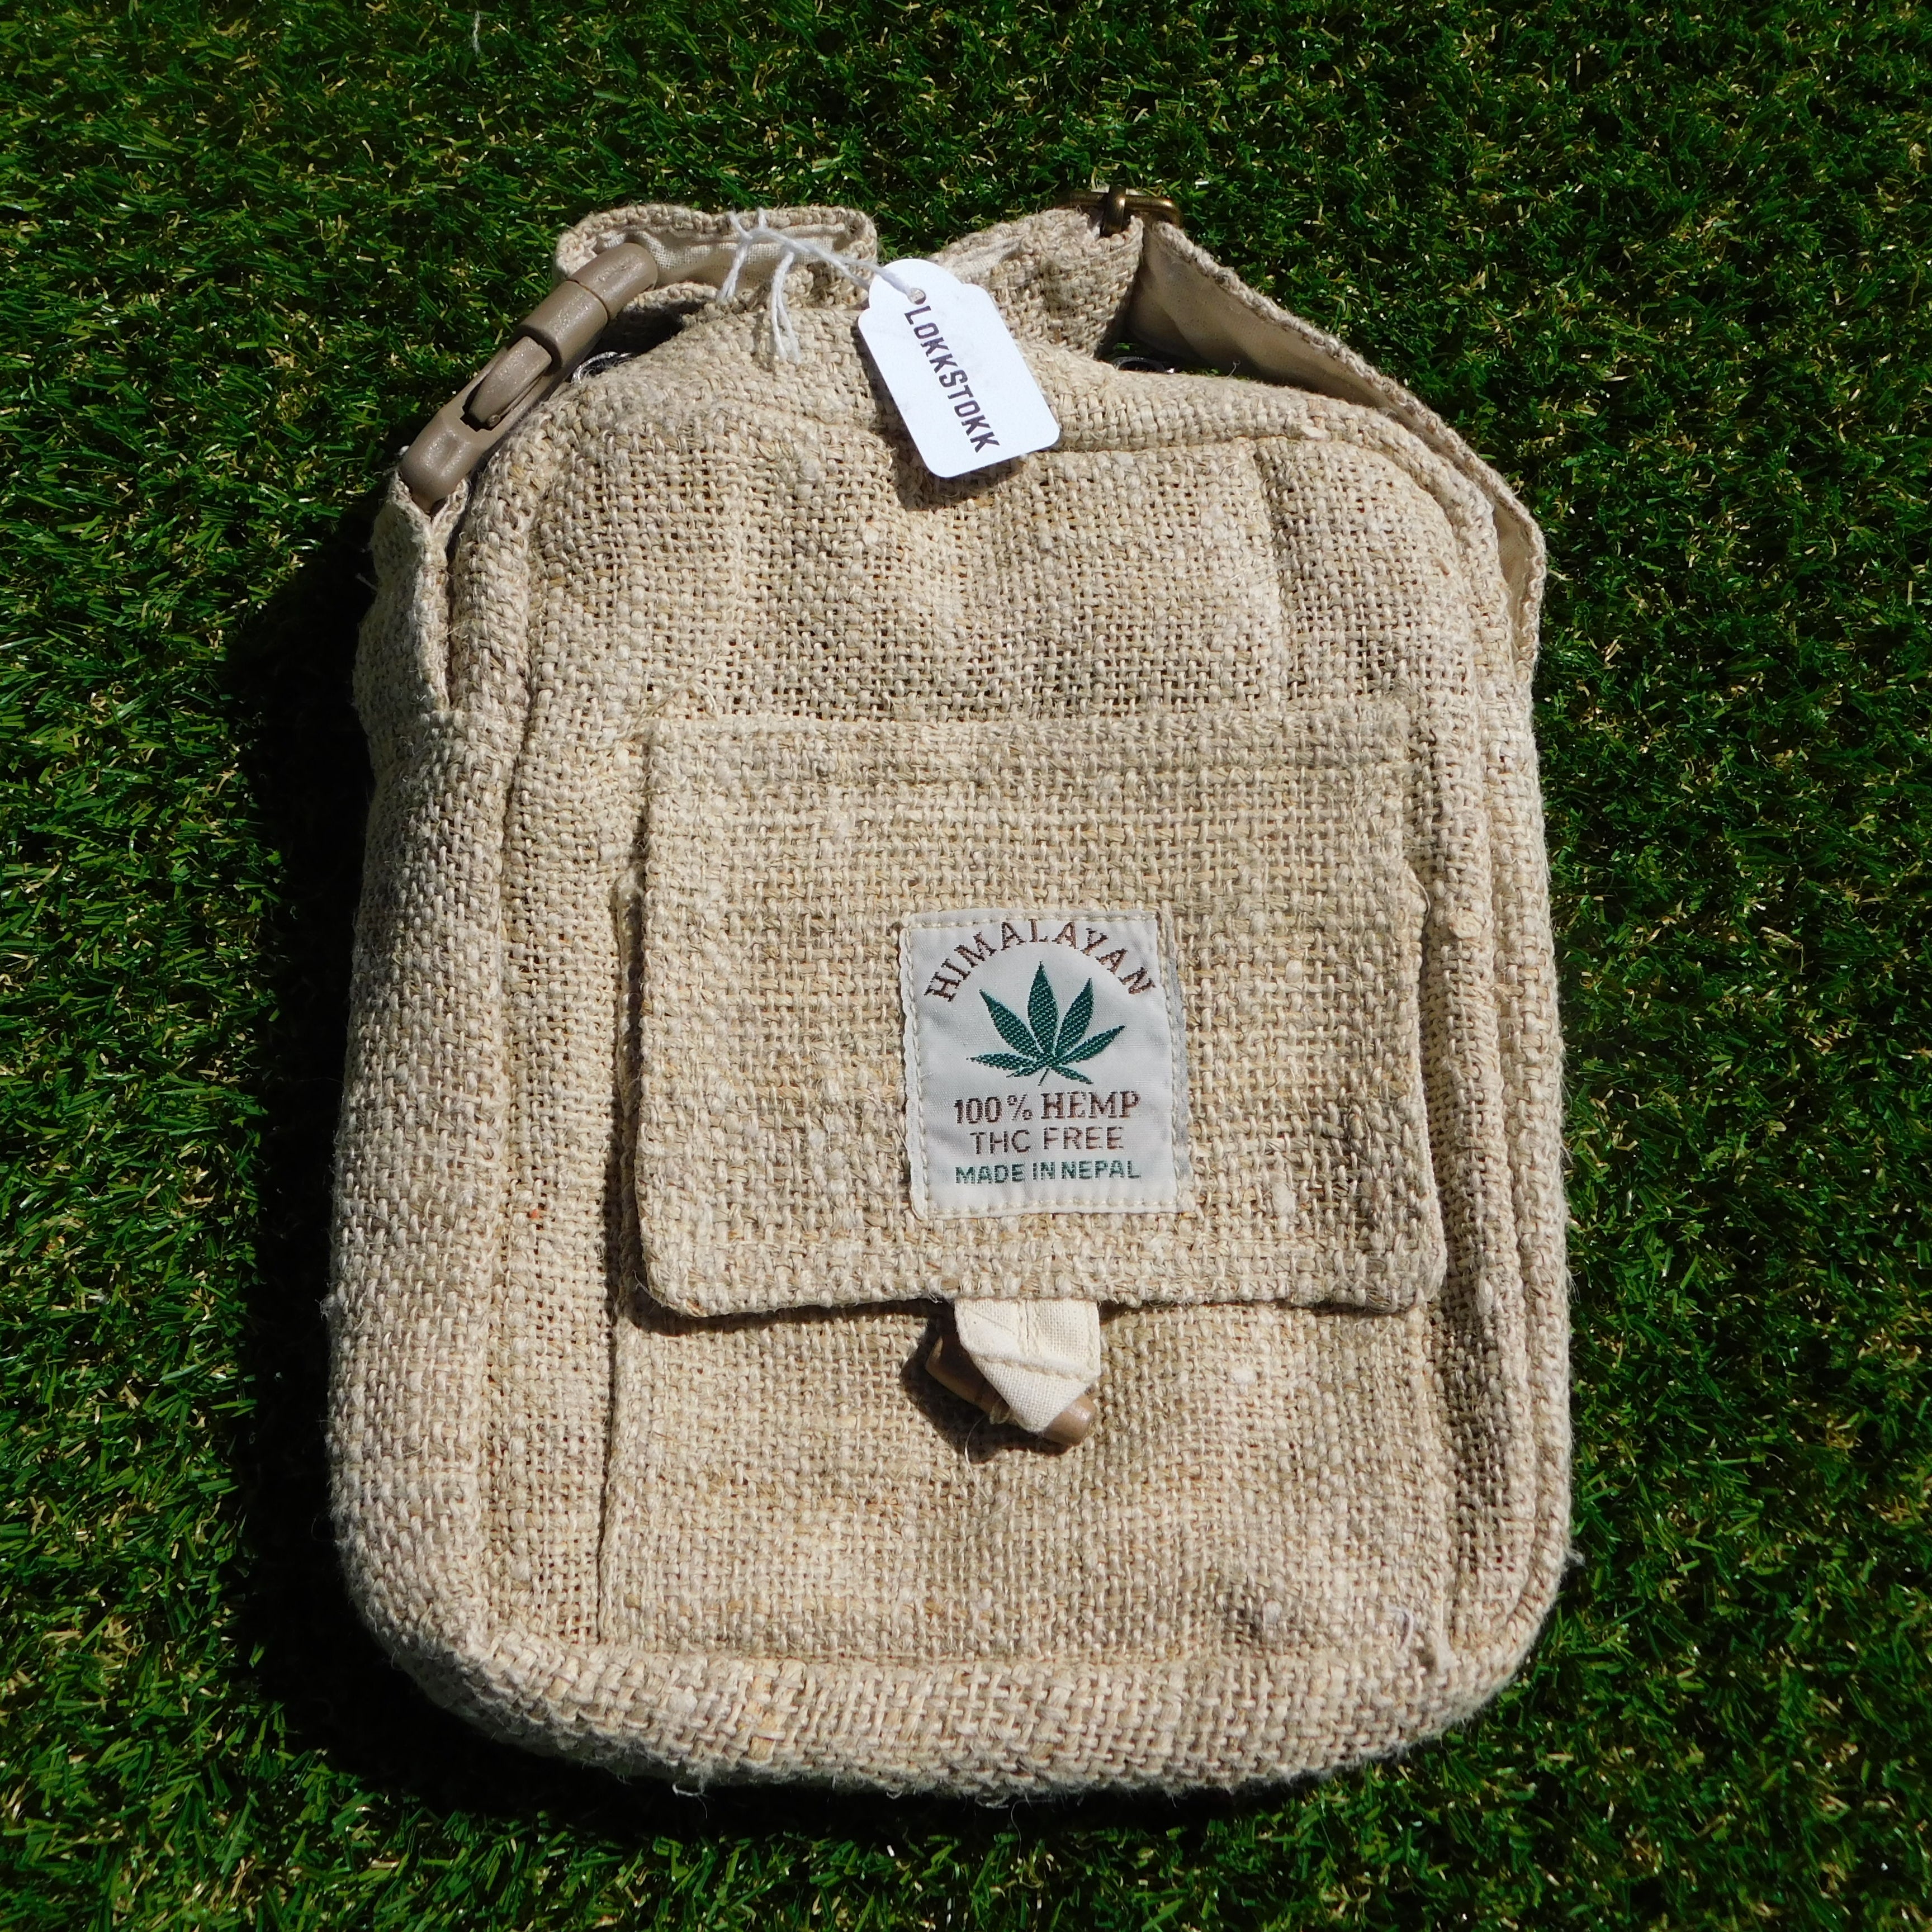 Small Bag with strap, 100% Hemp, Natural